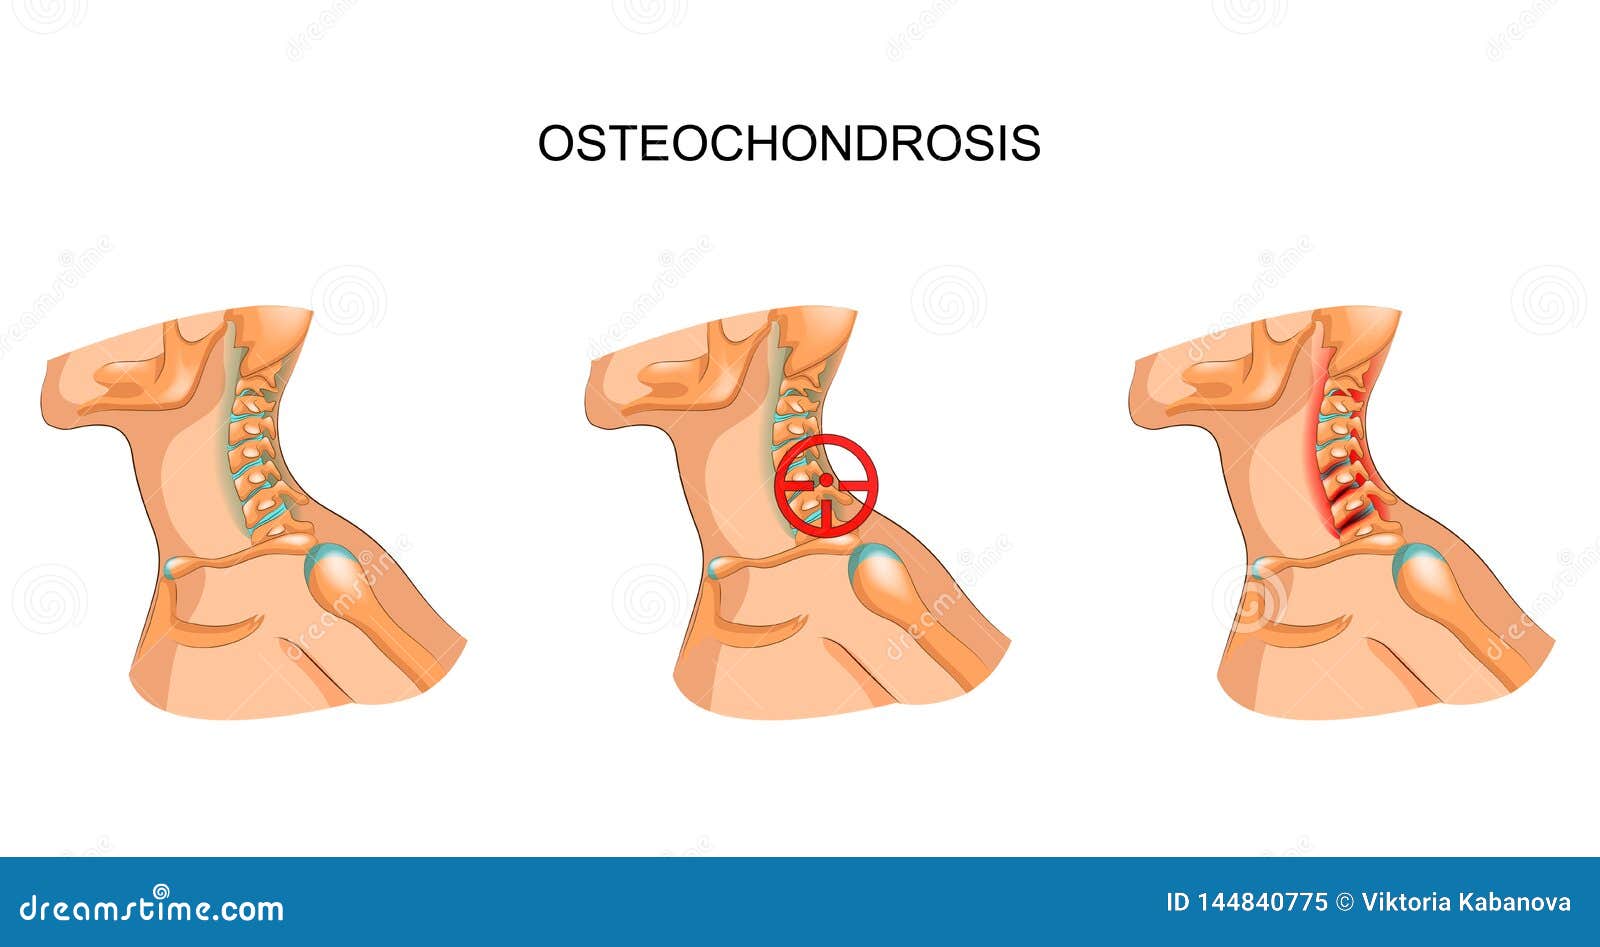 osteochondrosis terápia)